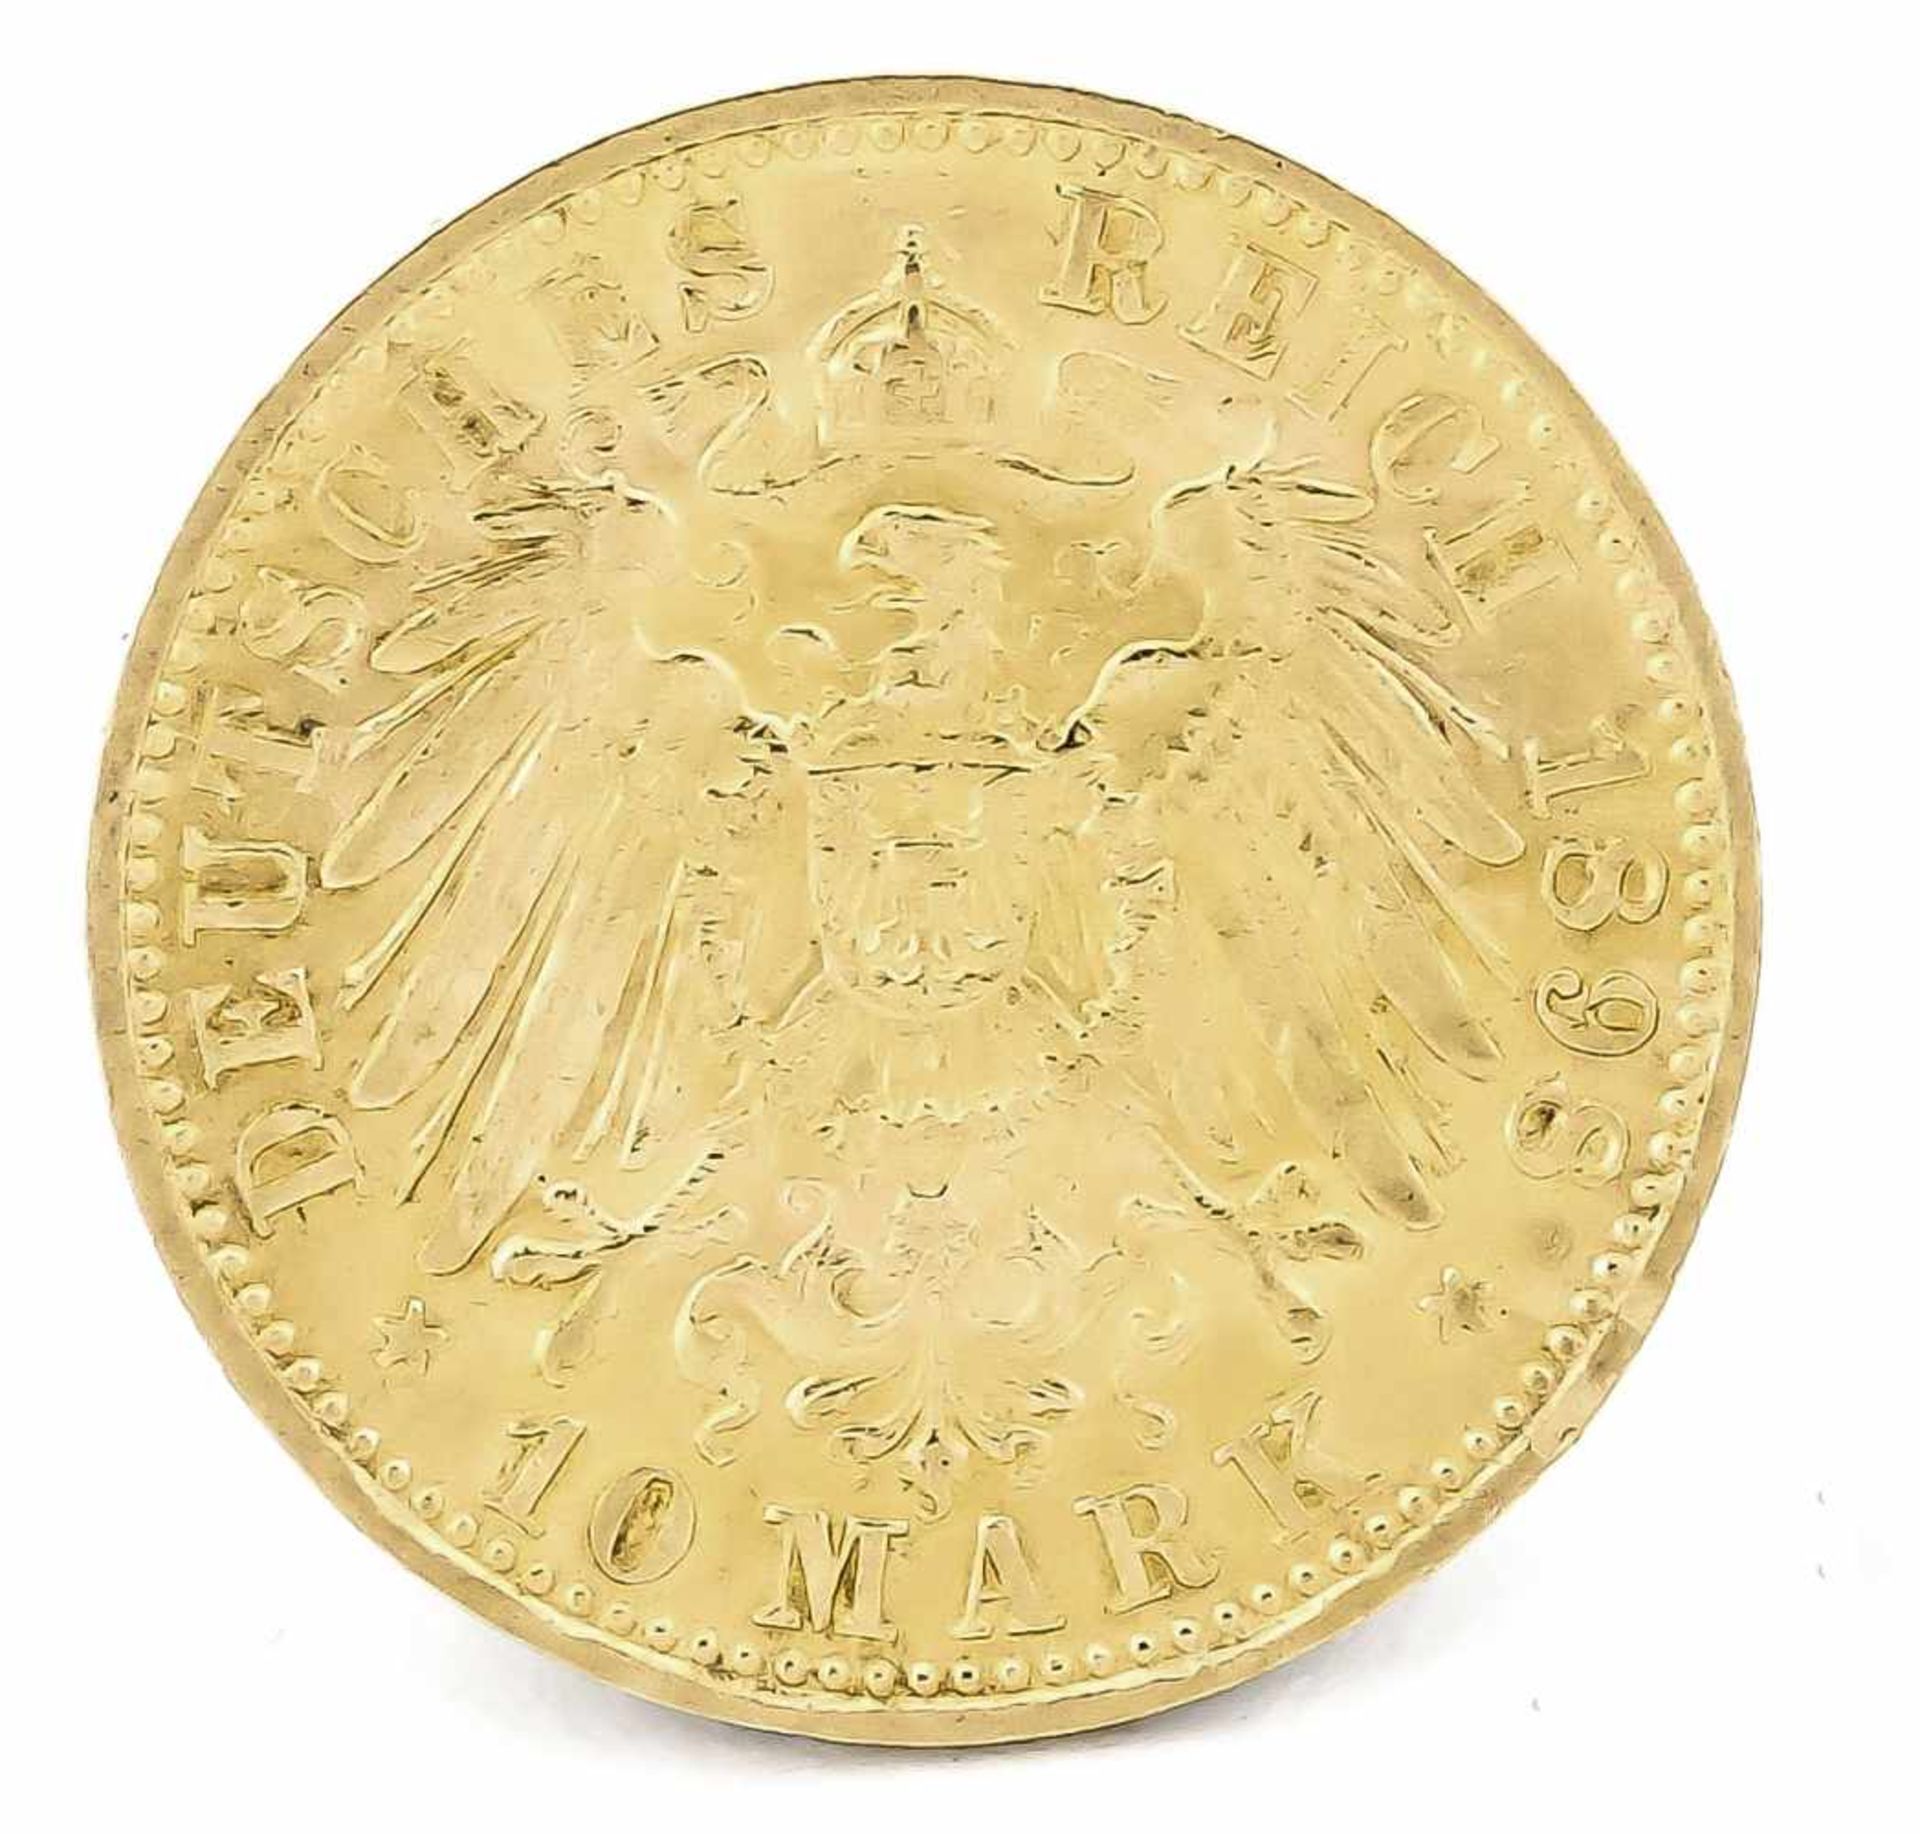 10 Mark, Preußen, Wilhelm II. Deutscher Kaiser König von Preußen, 1898 A, in vz - Bild 2 aus 2